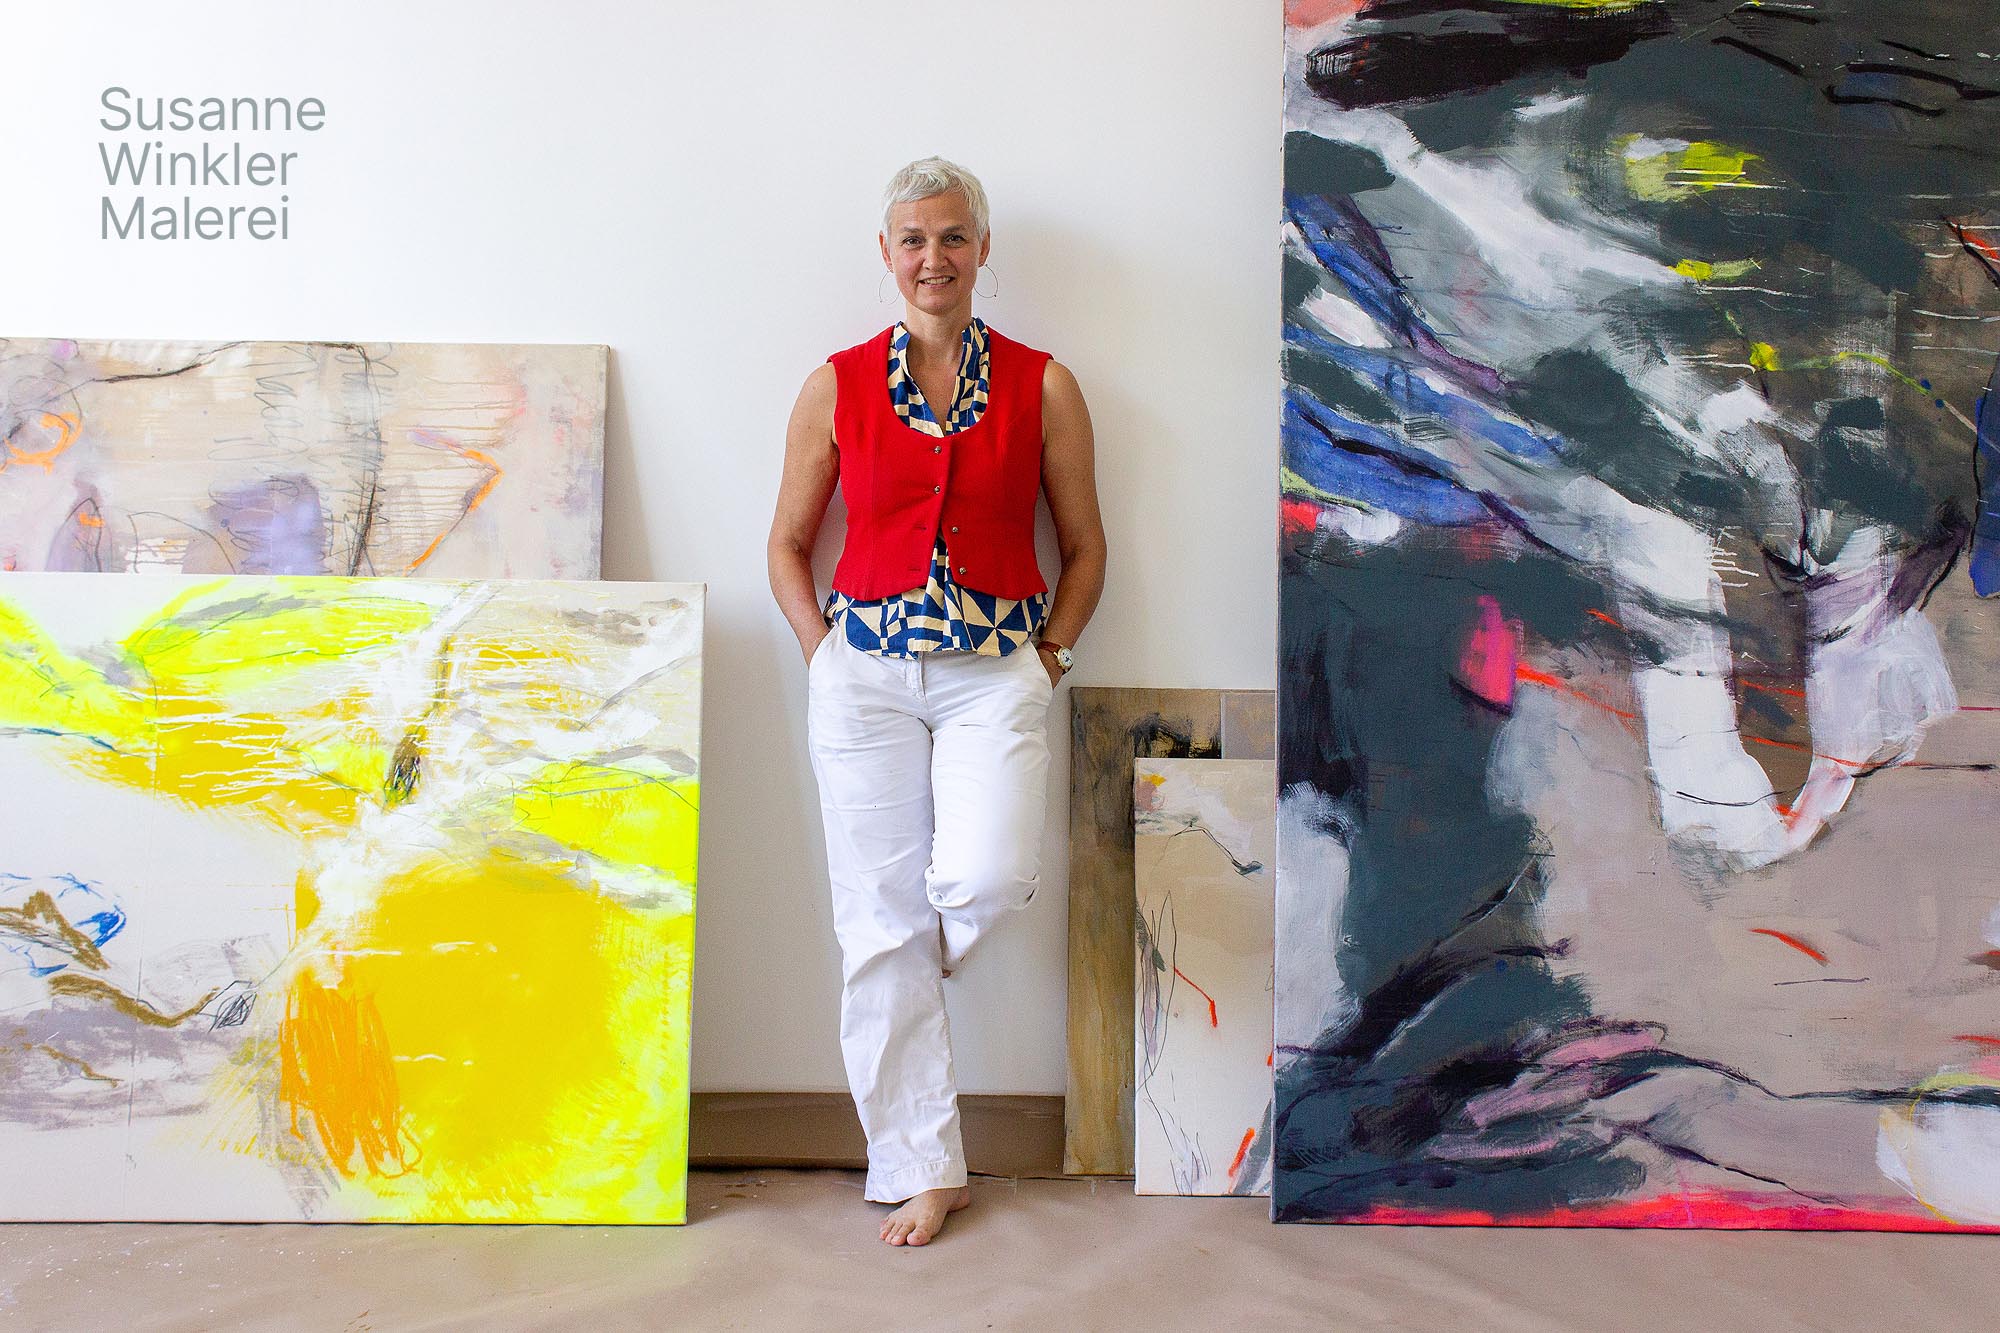 Susanne Winkler Malerei, Künstlerin und freischaffende Architektin aus Berlin zeigt eine Auswahl ihrer künstlerischen Arbeiten auf Leinwand, Papier sowie Arbeiten aus Keramik